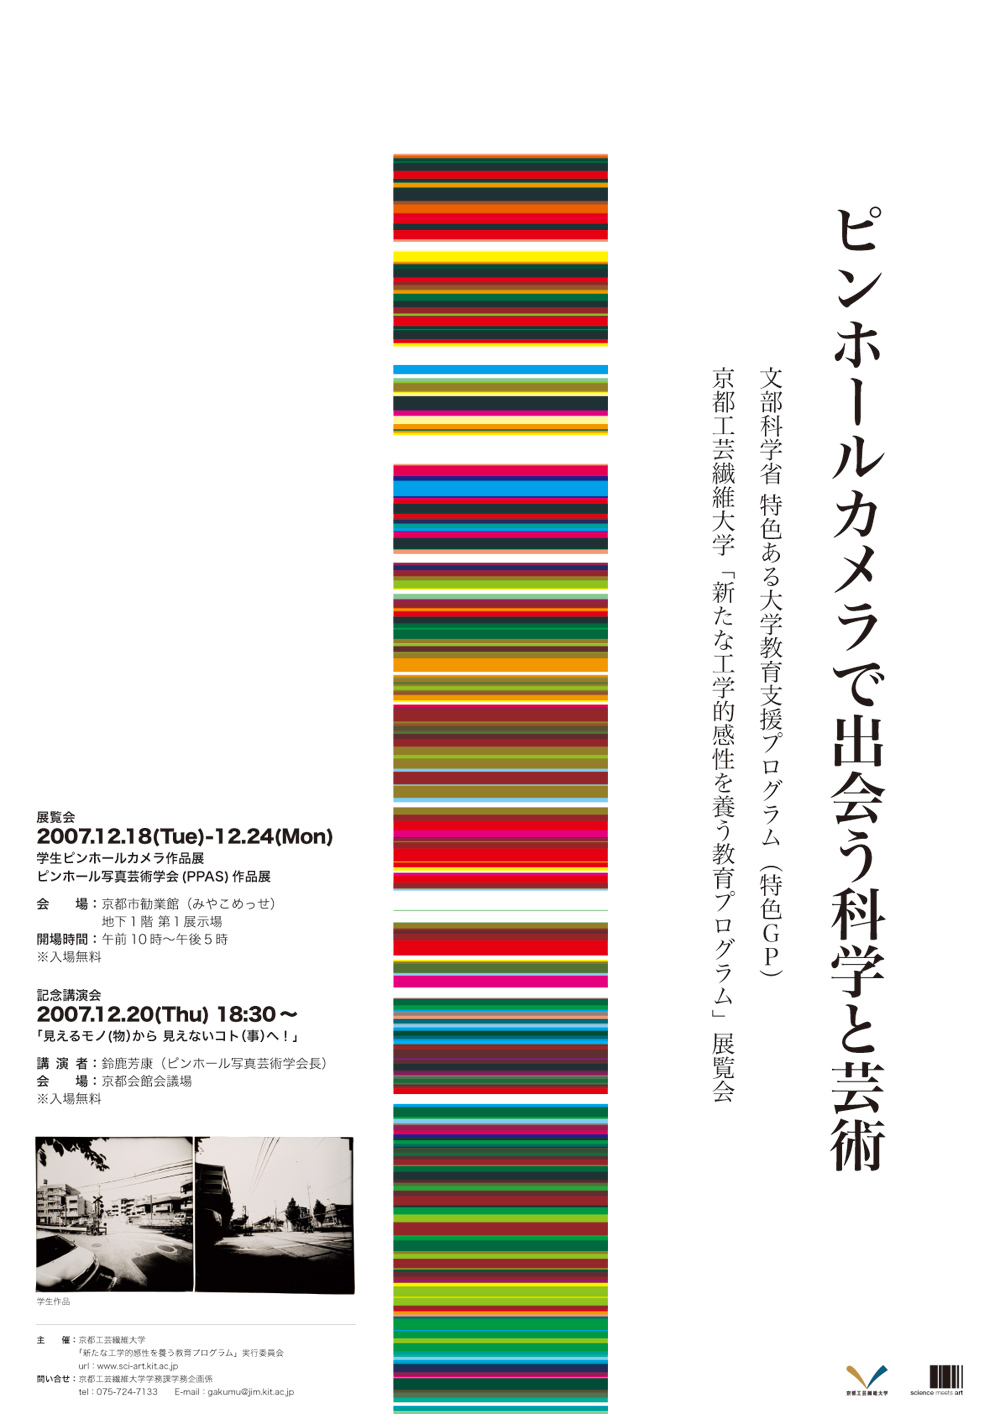 京都工芸繊維大学 TGP Poster